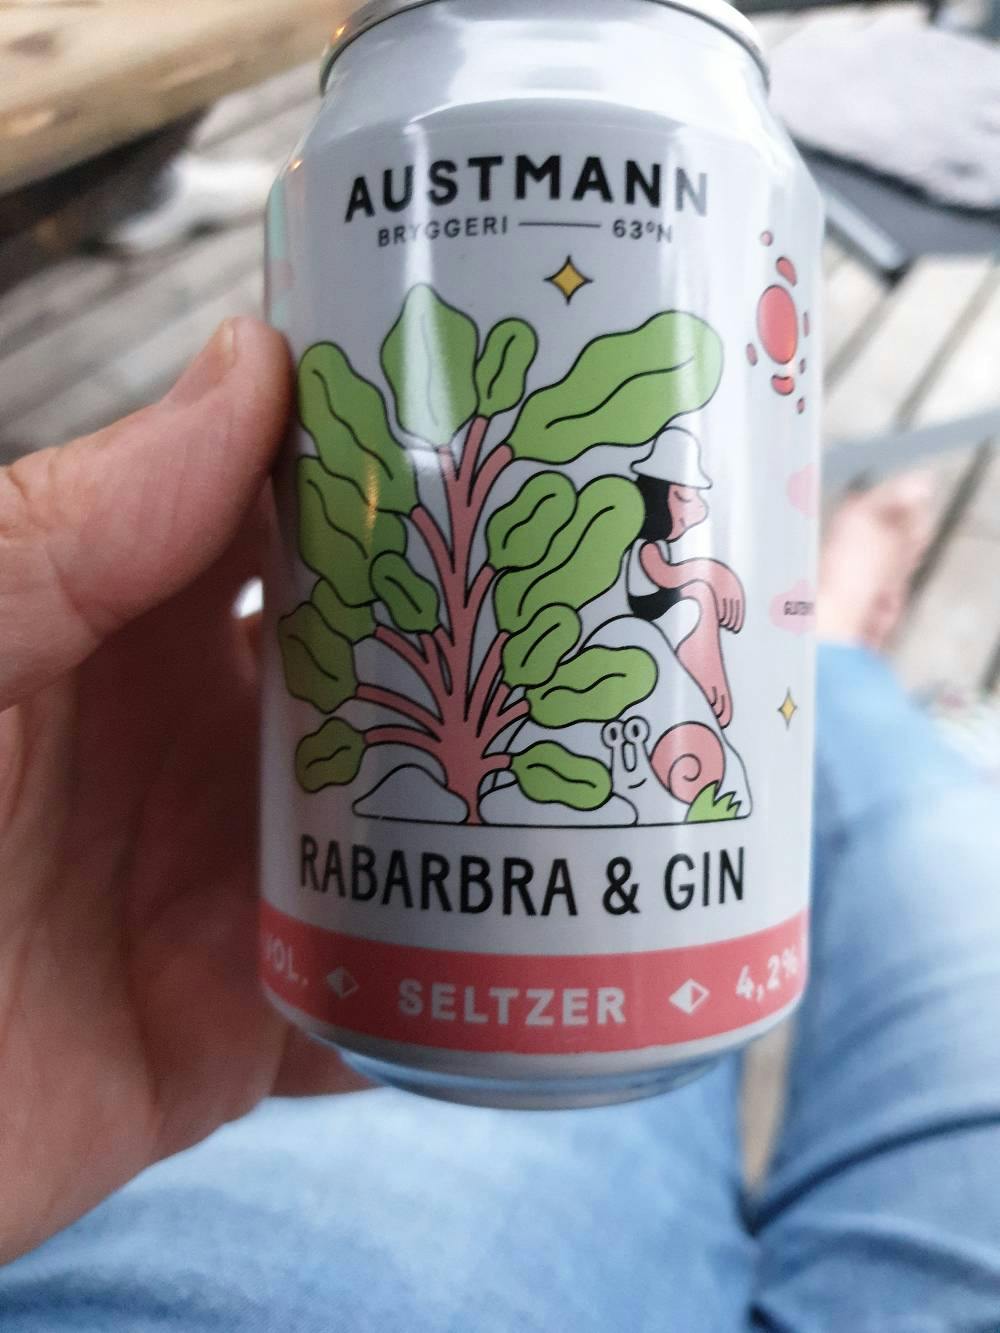 Rabarbra og gin, Austmann